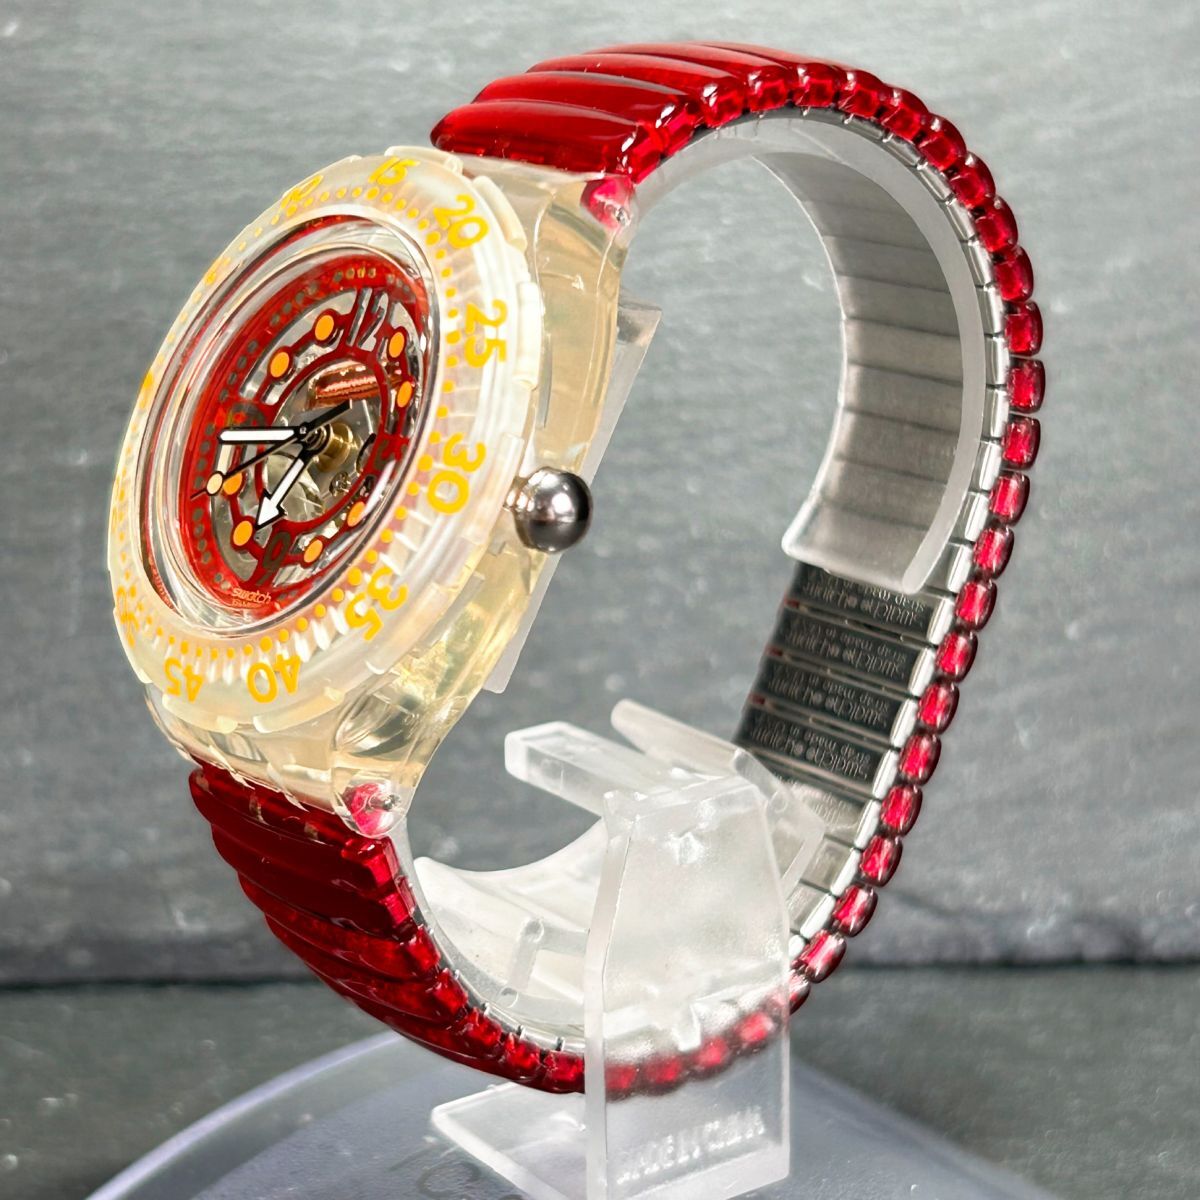  новый товар Swatch Swatch RED MARINE Scuba200 SDK114/5 наручные часы кварц аналог Divers каркас вращение оправа новый товар батарейка заменена 